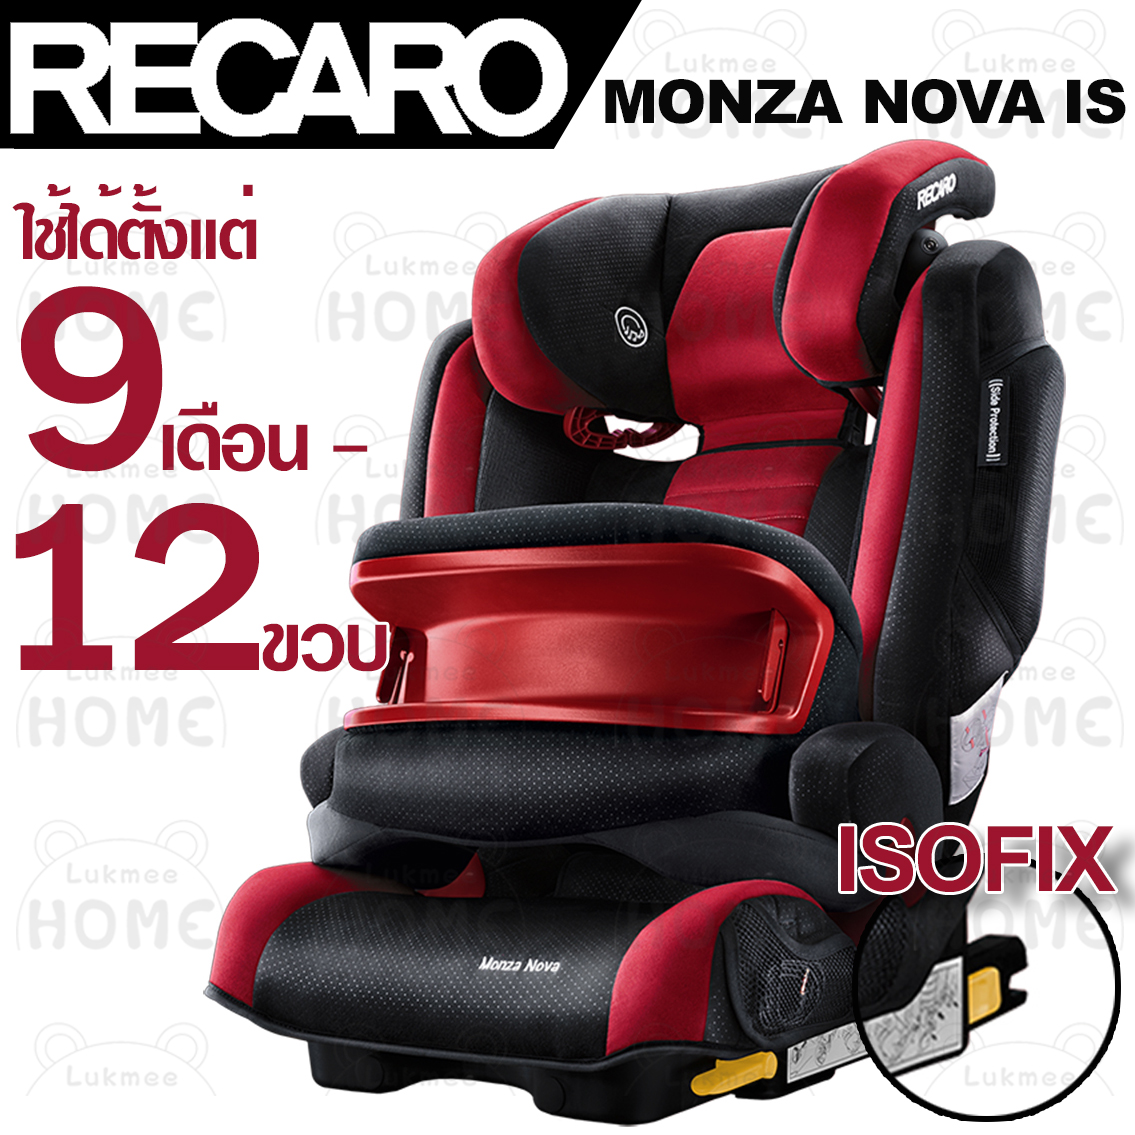 Recaro Monza Nova IS ของแท้ คาร์ซีท คารซีทเด็กโต บูทเตอร์ซีท  สีวัสดุ Ruby